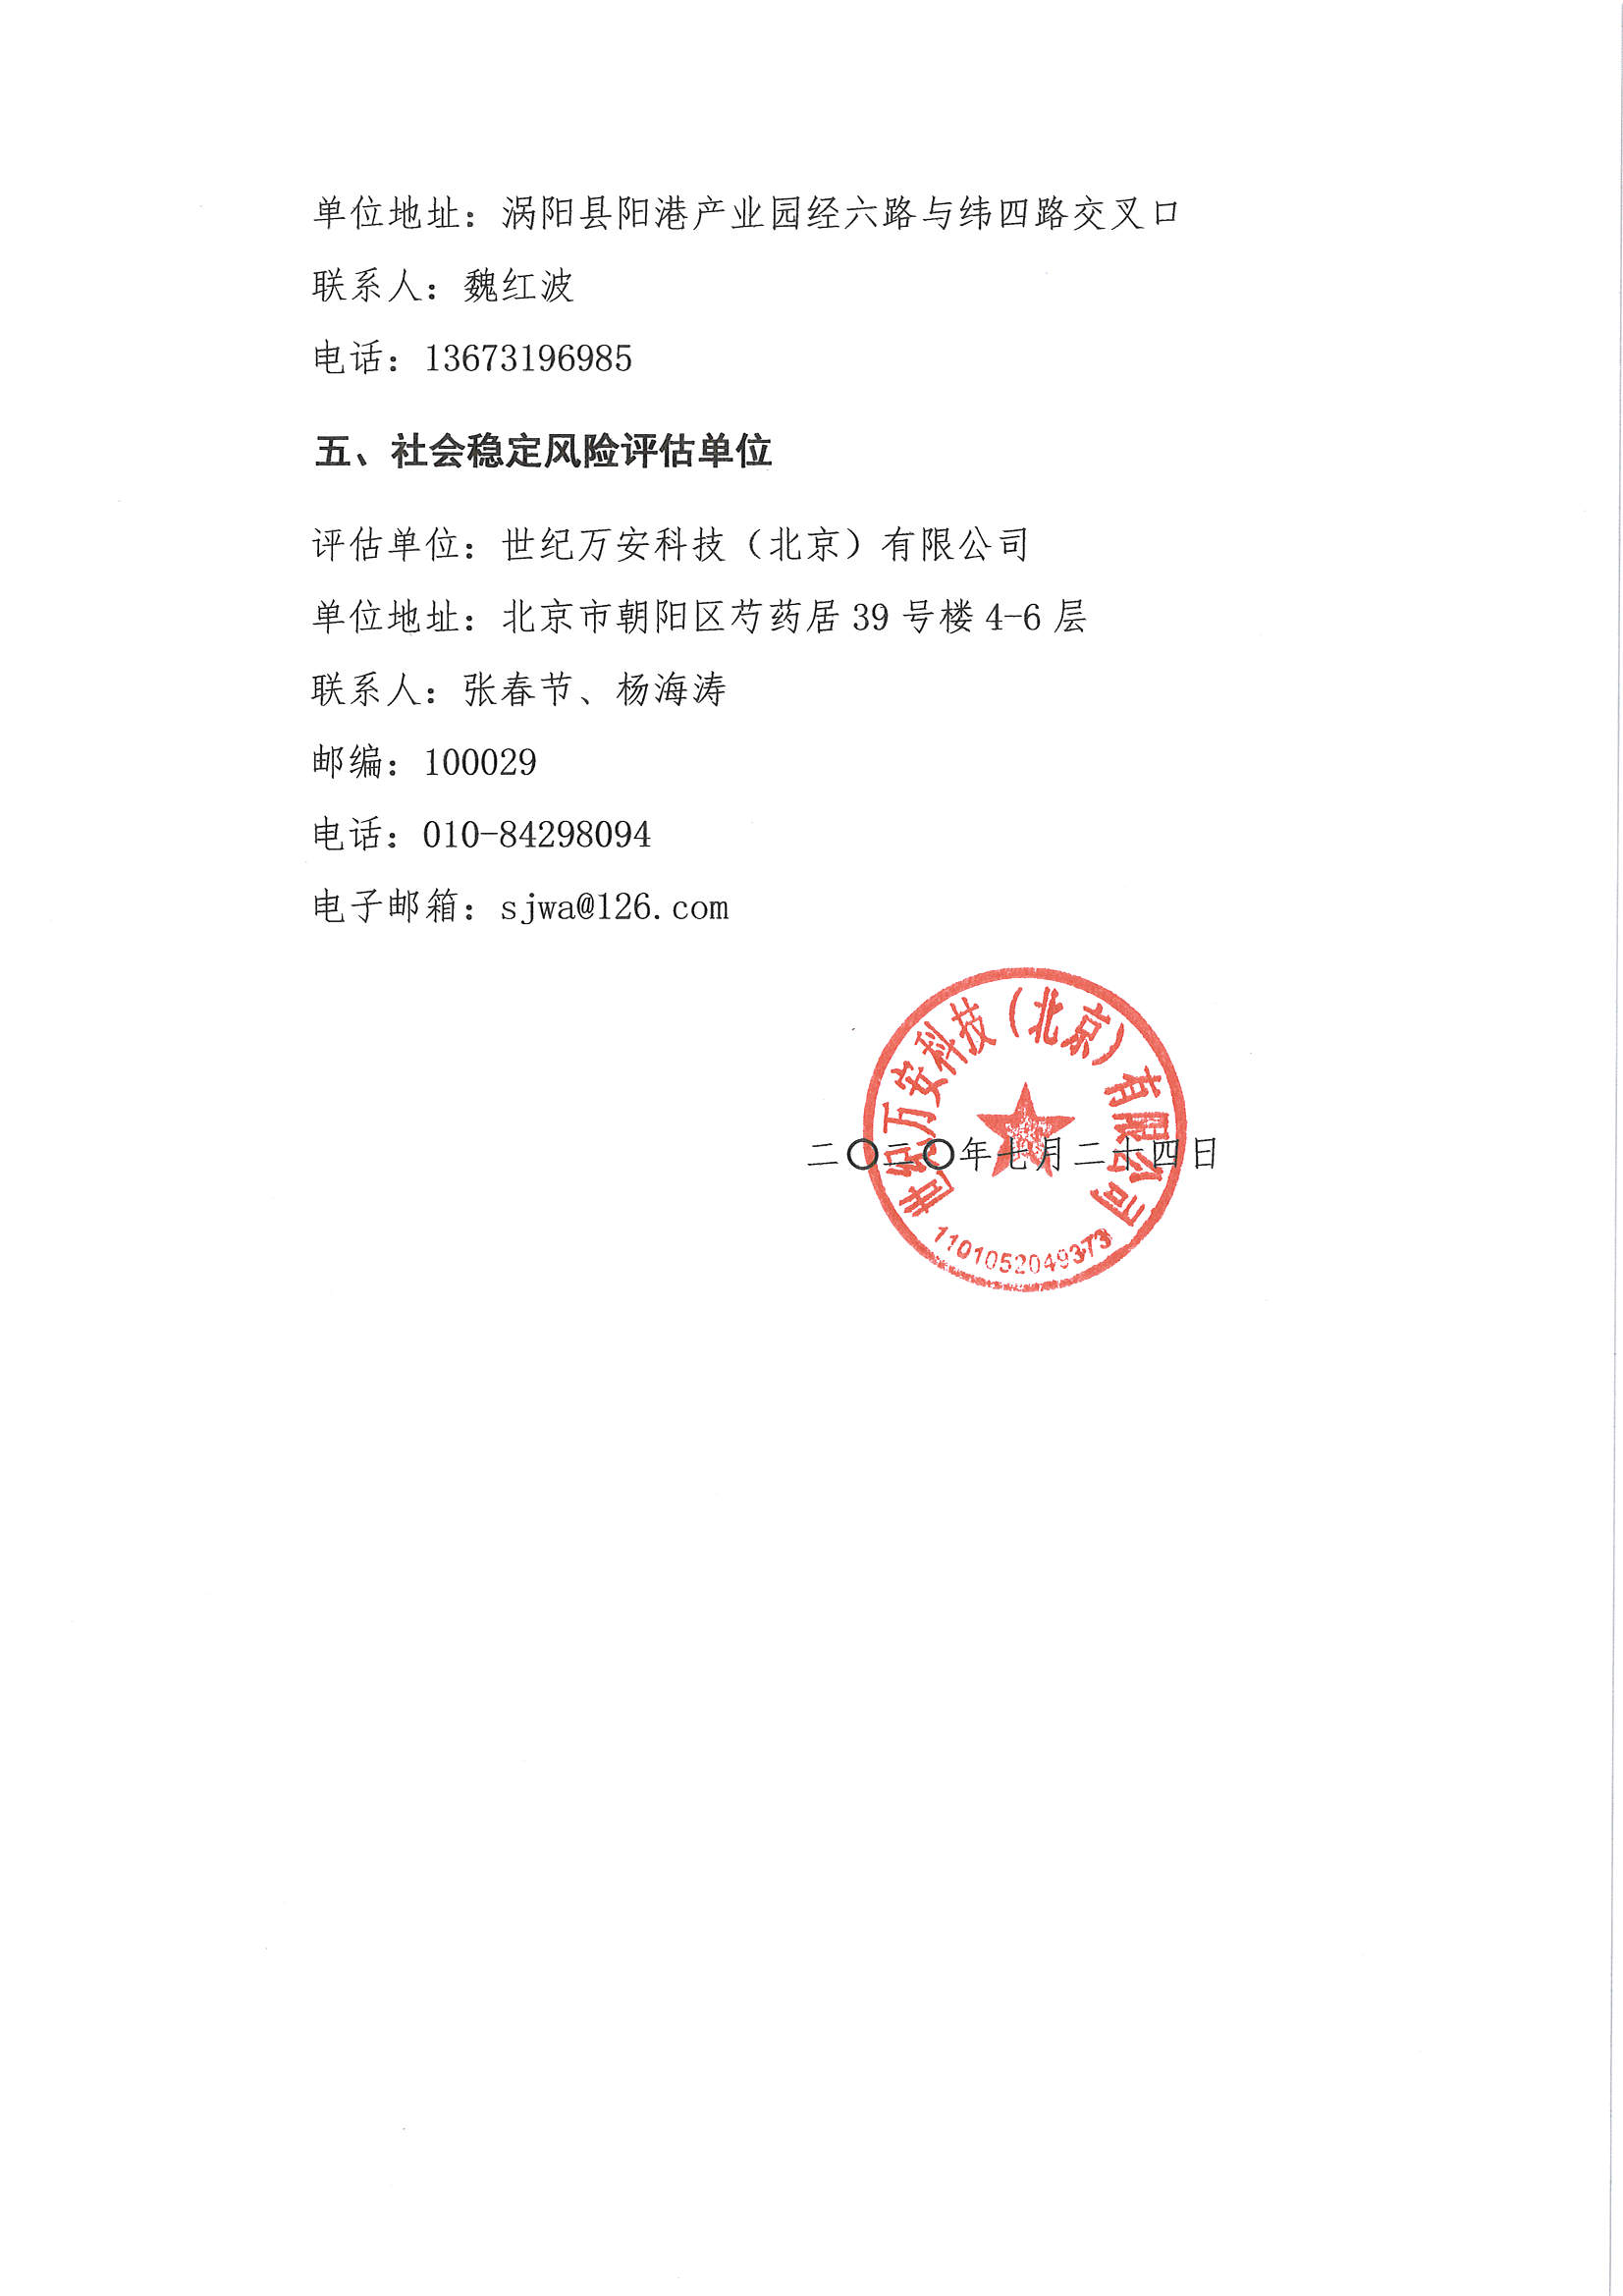 关于“涡阳县阳港热电有限责任公司热电联产项目社会稳定风险评估”的公示_页面_3.jpg